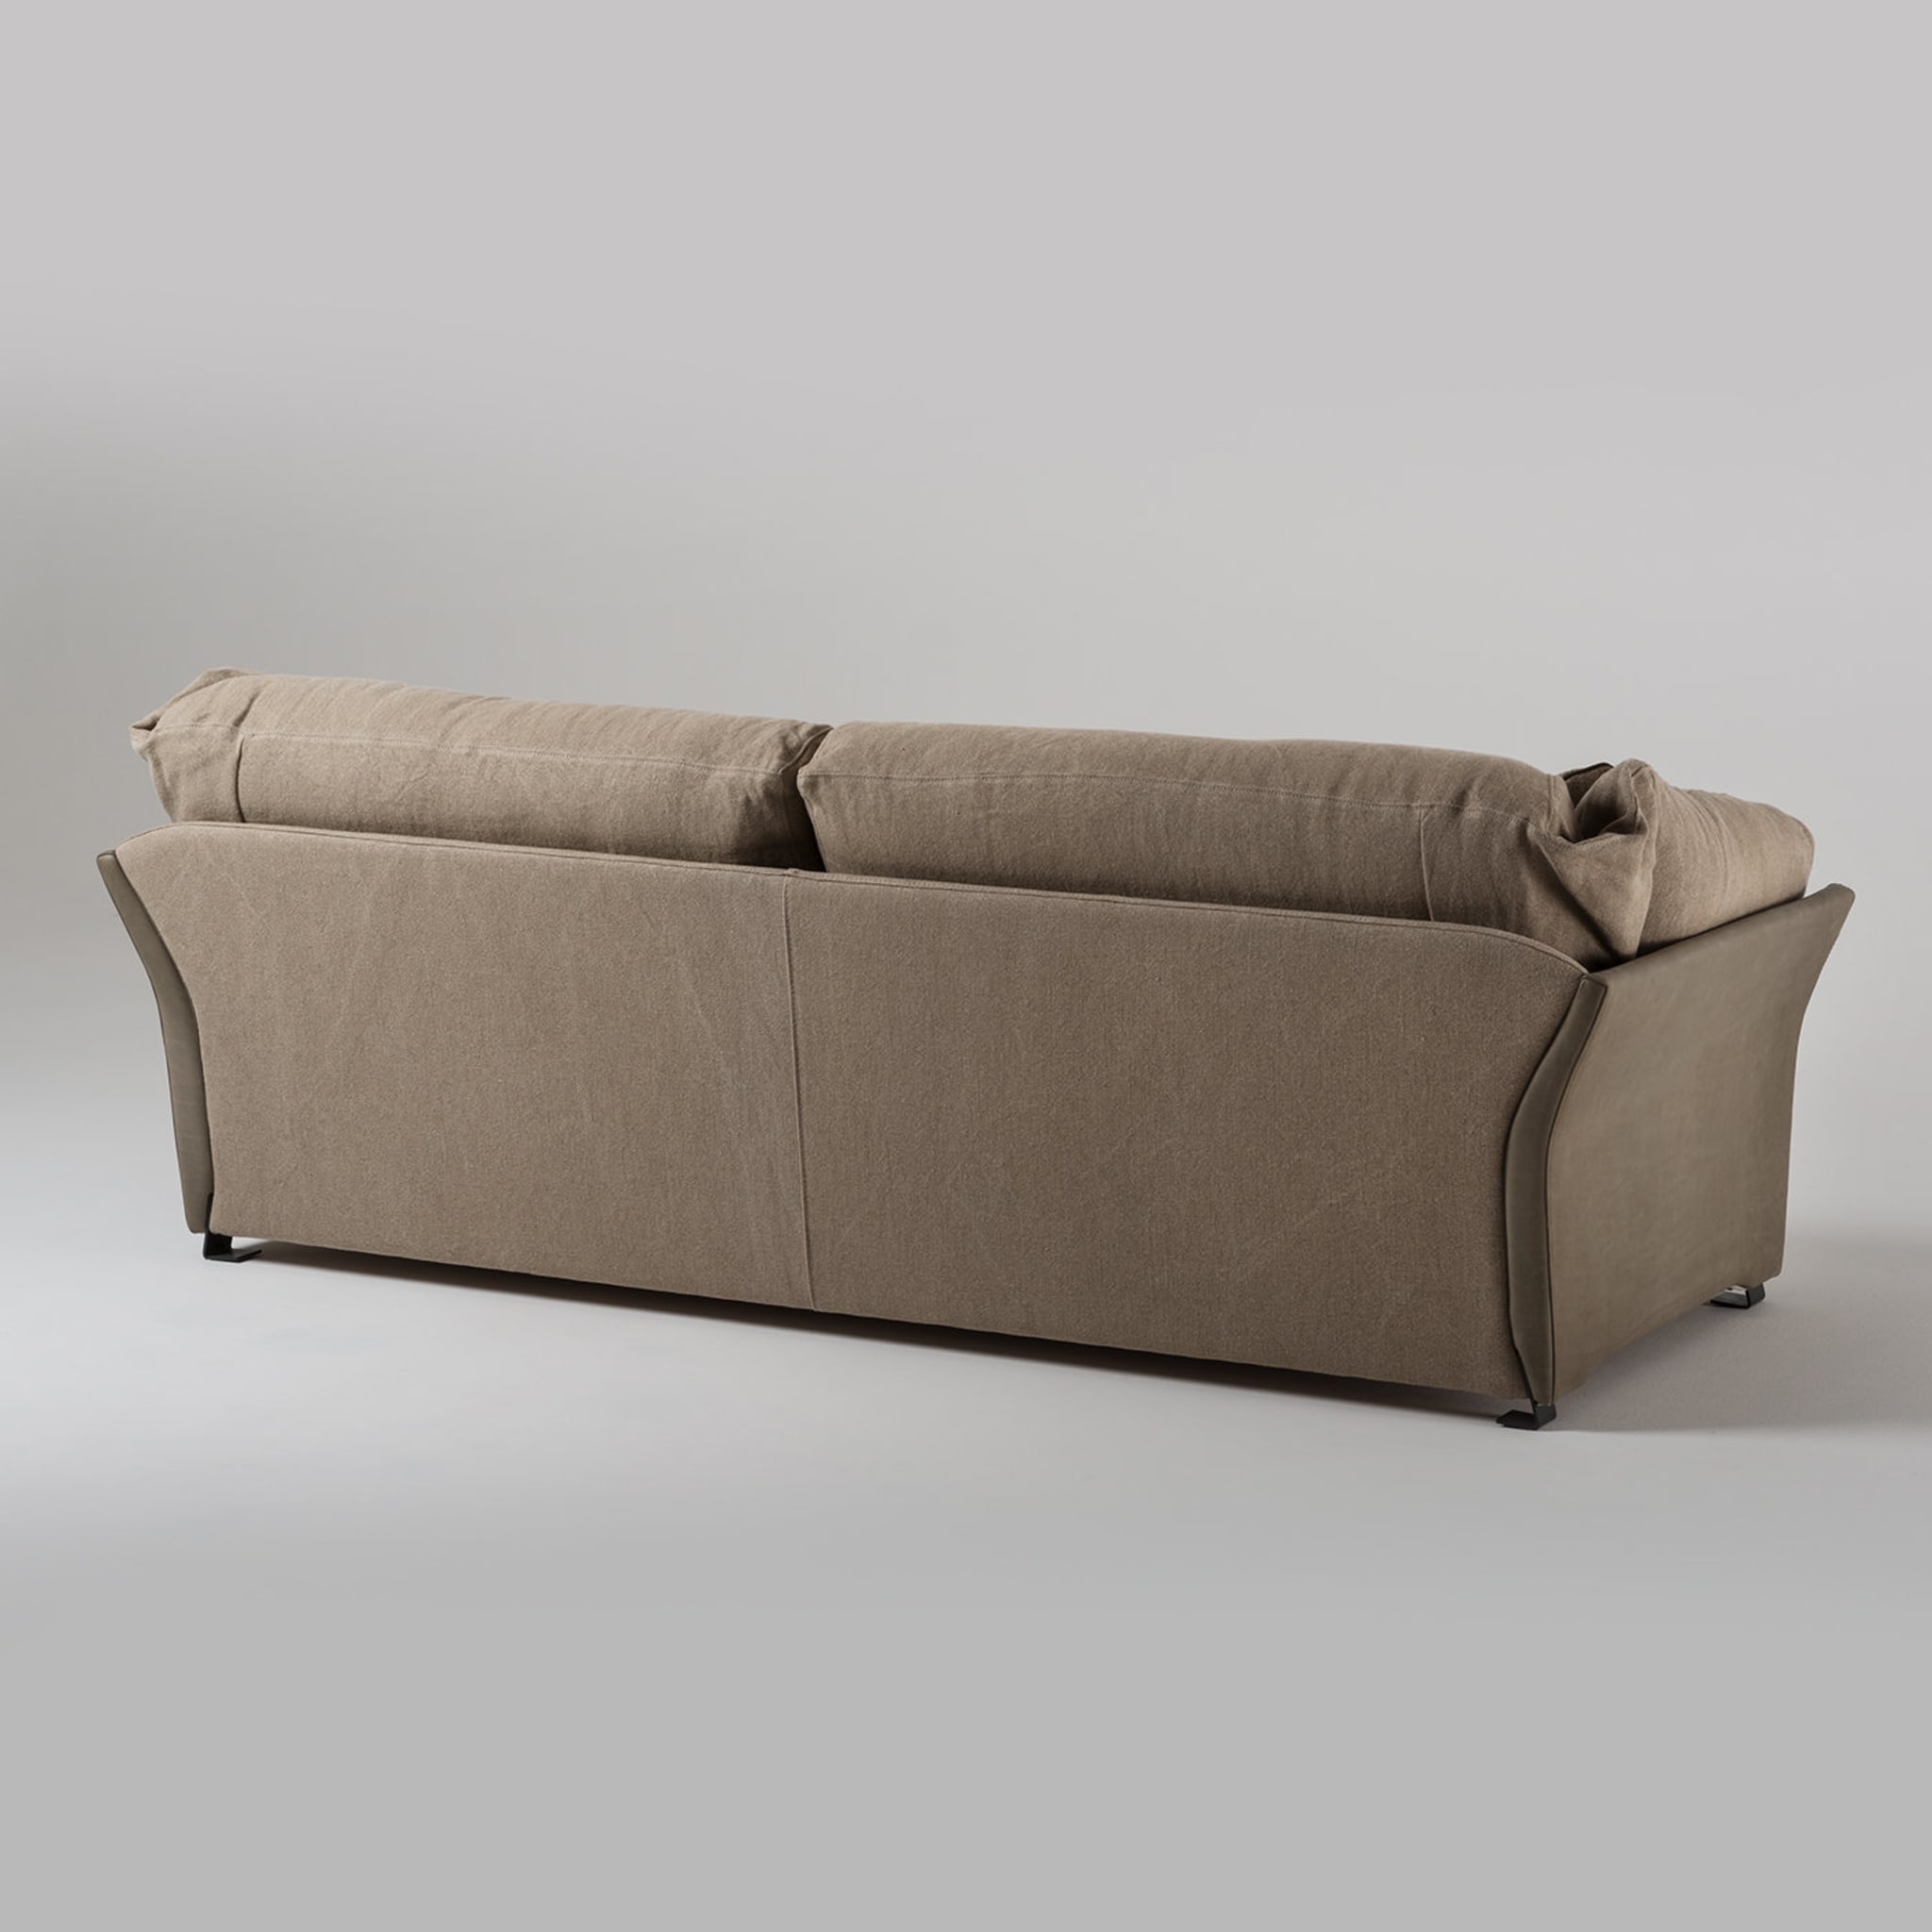 Paco 3-Sitzer Sofa Tribeca Kollektion von Marco und Giulio Mantellassi  - Alternative Ansicht 1